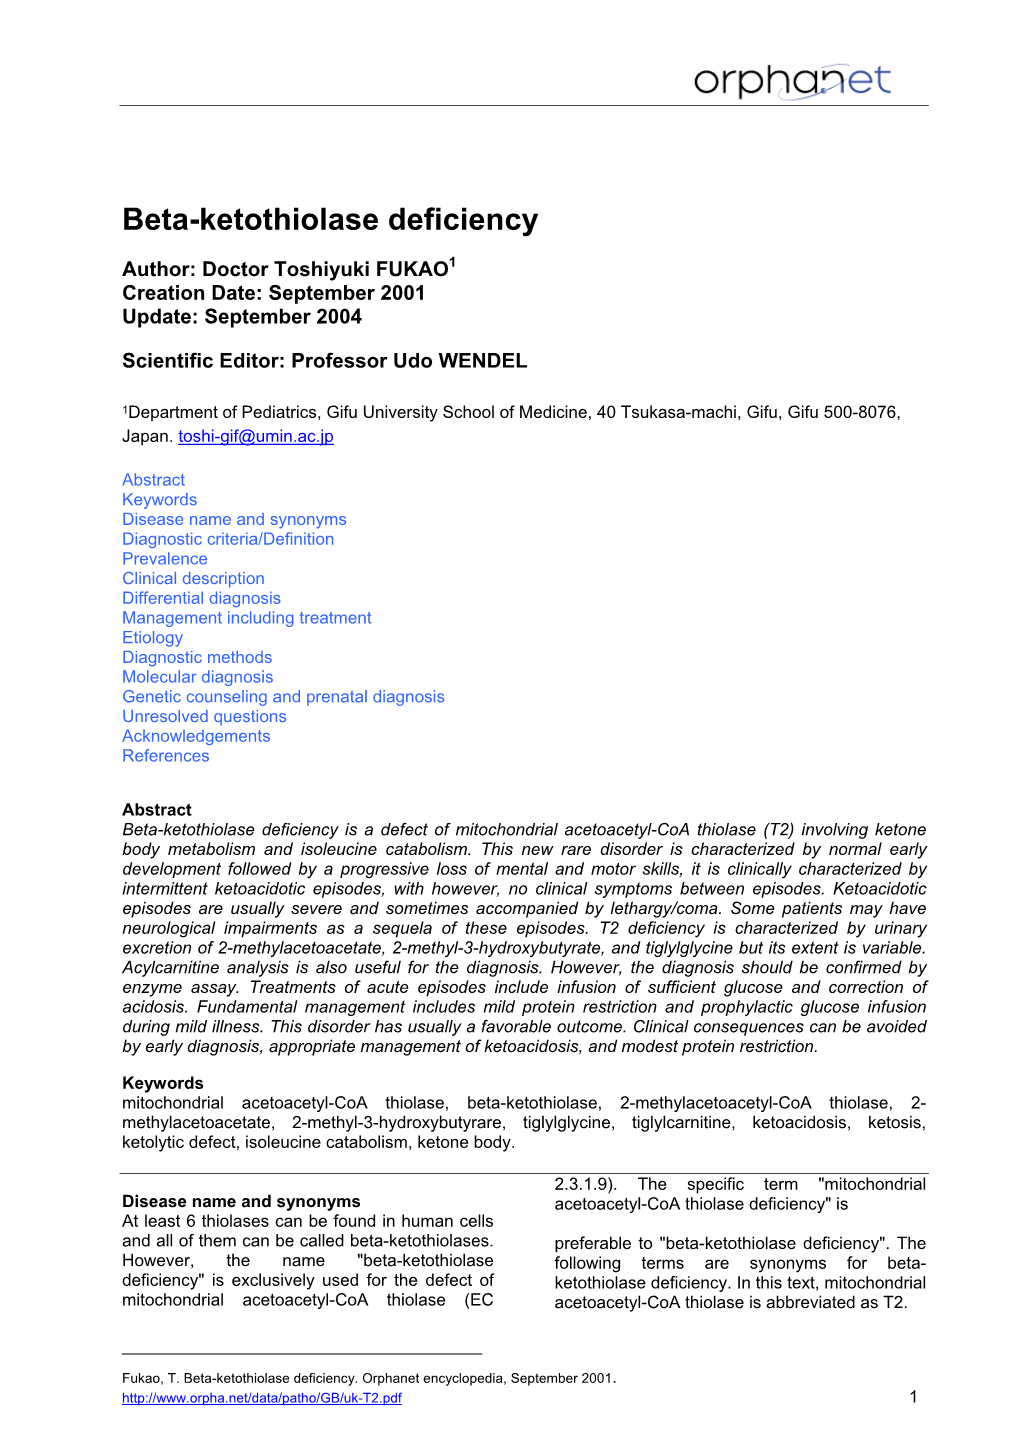 Beta-Ketothiolase Deficiency